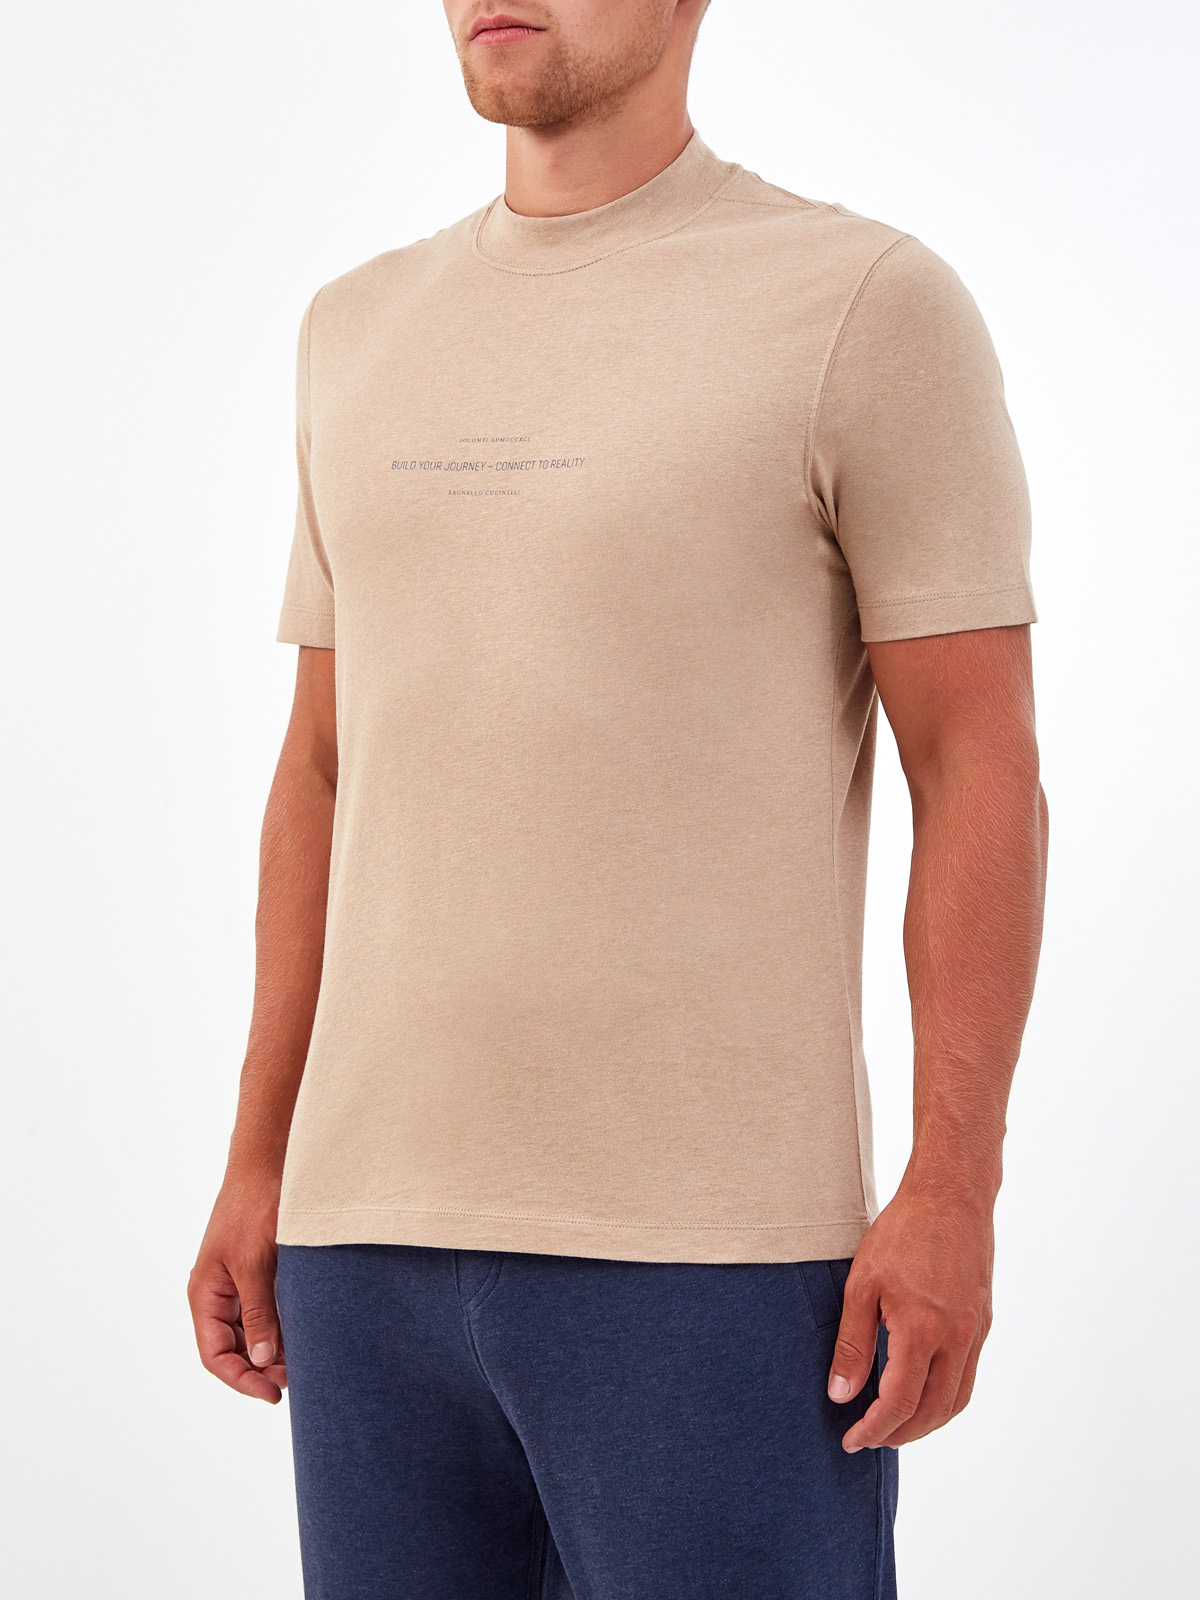 Хлопковая футболка с минималистичным принтом в стиле леттеринг BRUNELLO CUCINELLI, цвет бежевый, размер 50;52;46 - фото 3